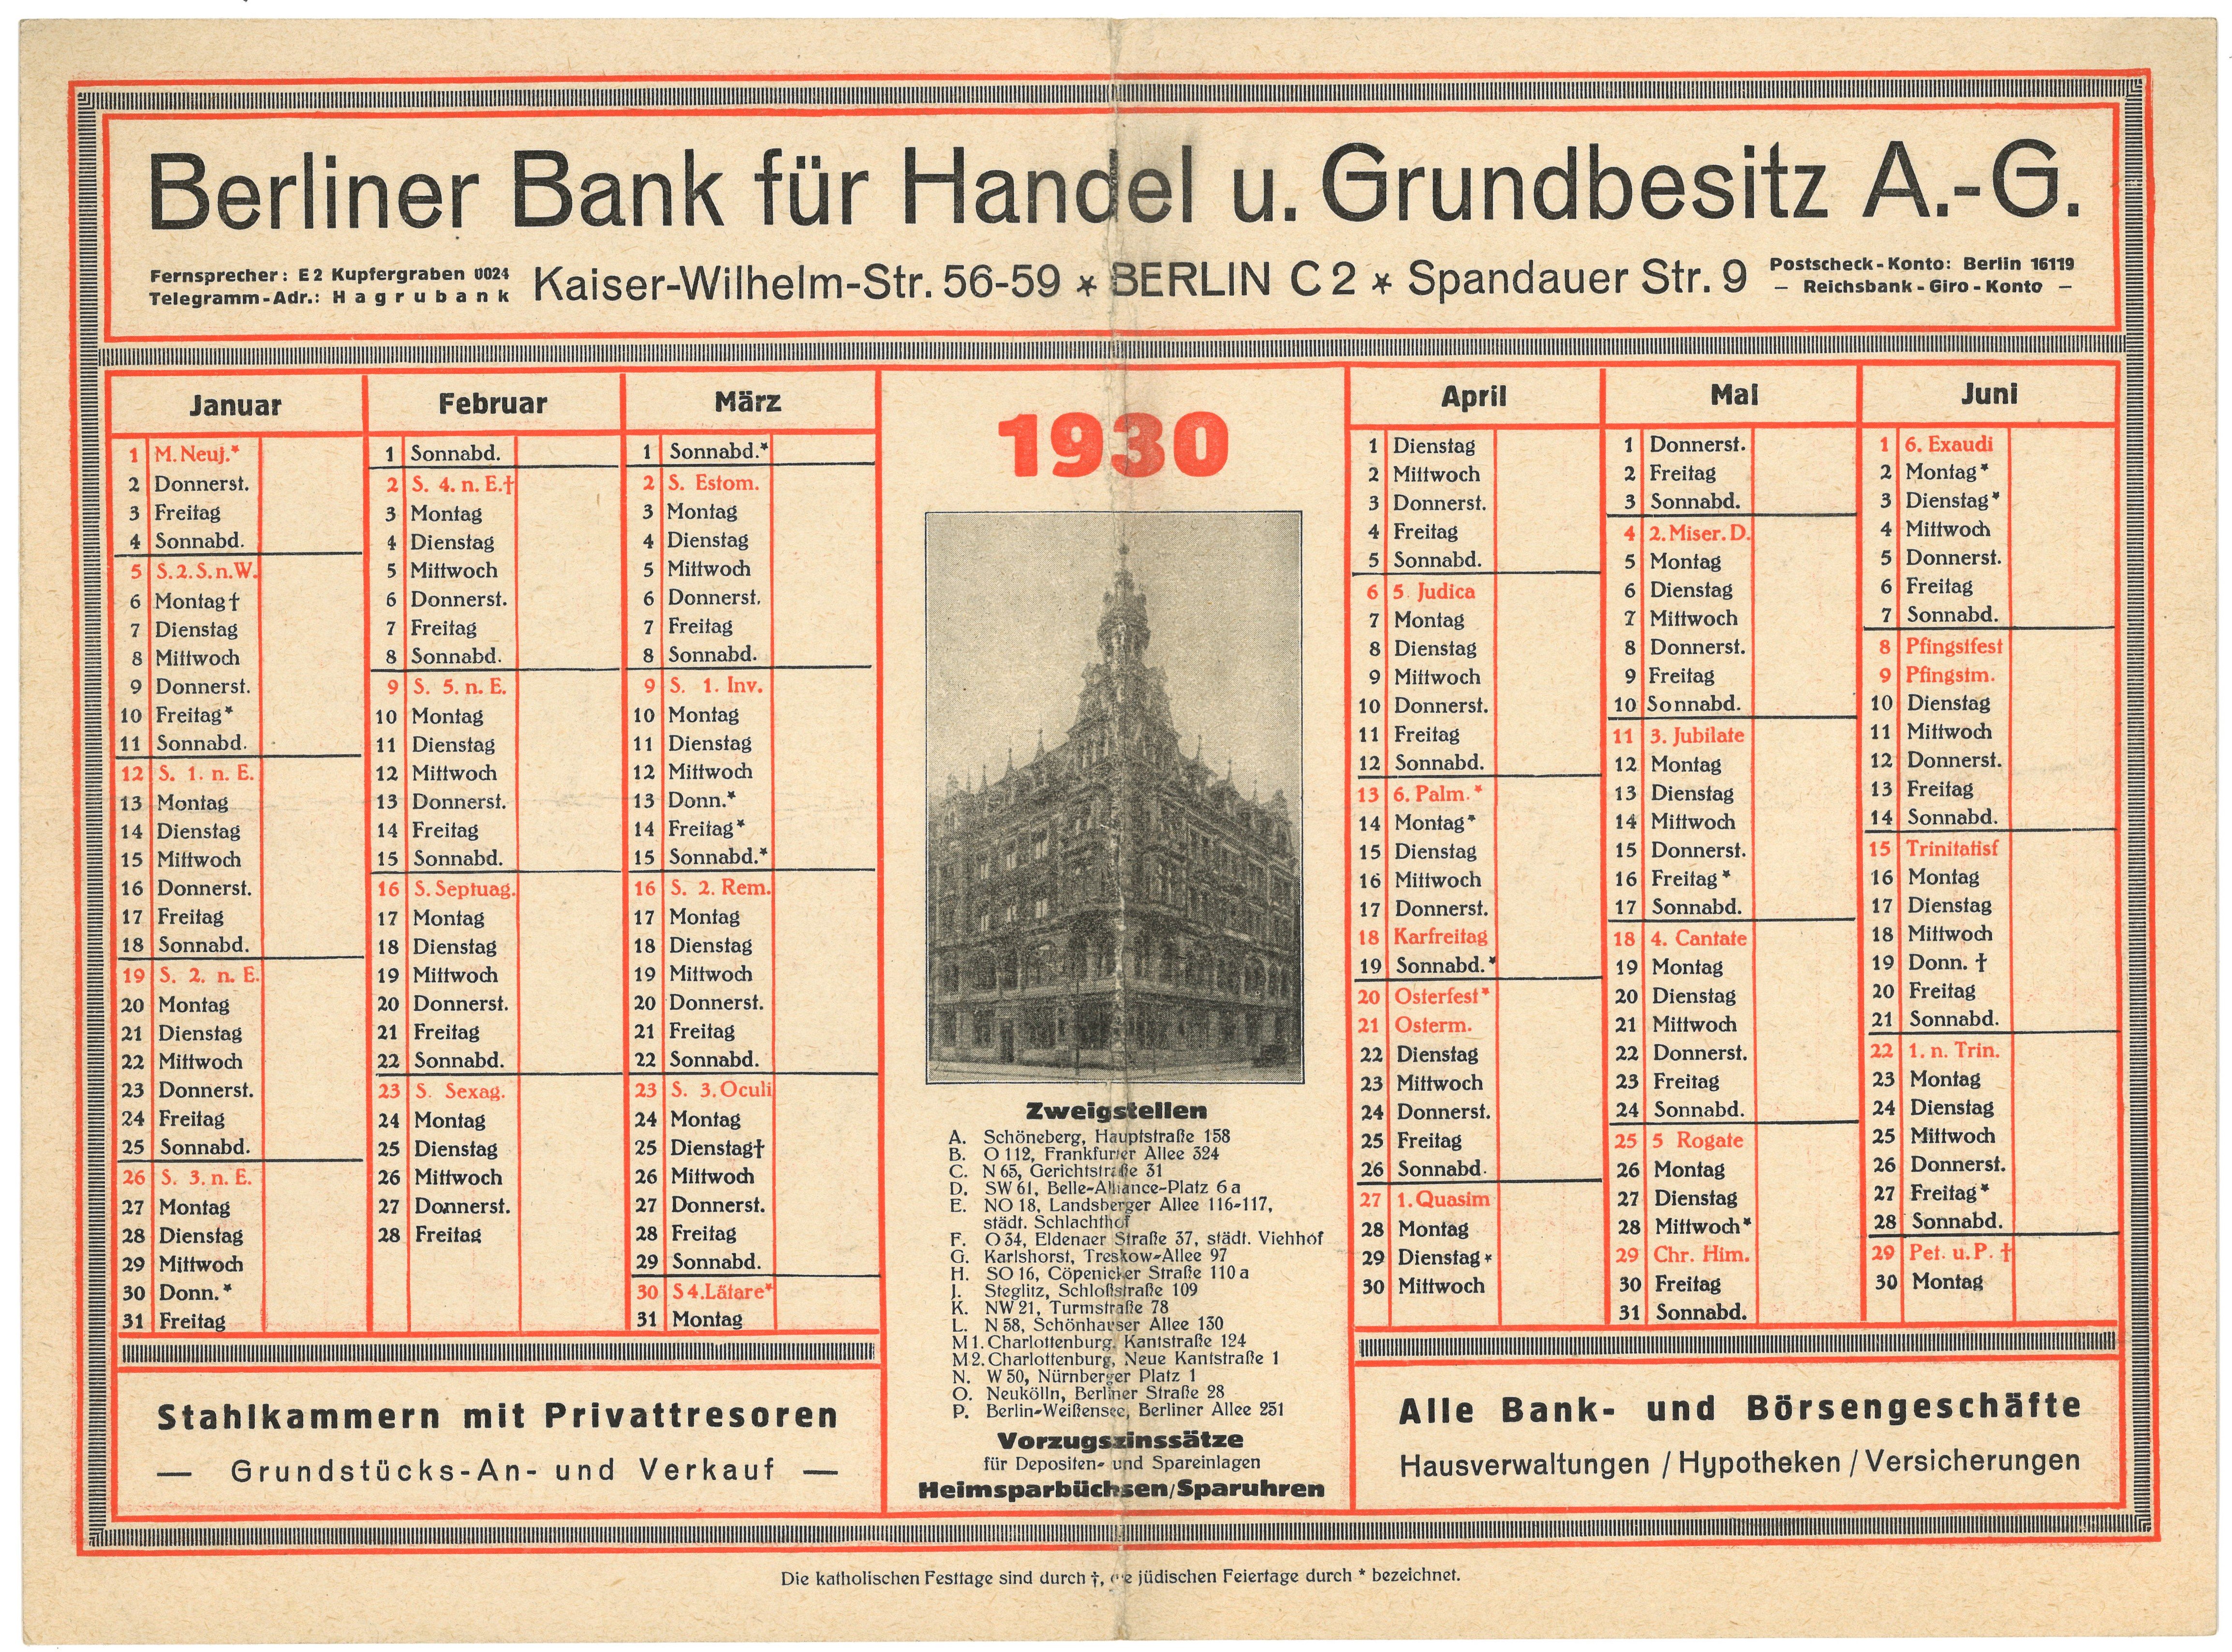 Werbekalender der Berliner Bank für Handel u. Grundbesitz A.-G. für 1930 (Landesgeschichtliche Vereinigung für die Mark Brandenburg e.V., Archiv CC BY)